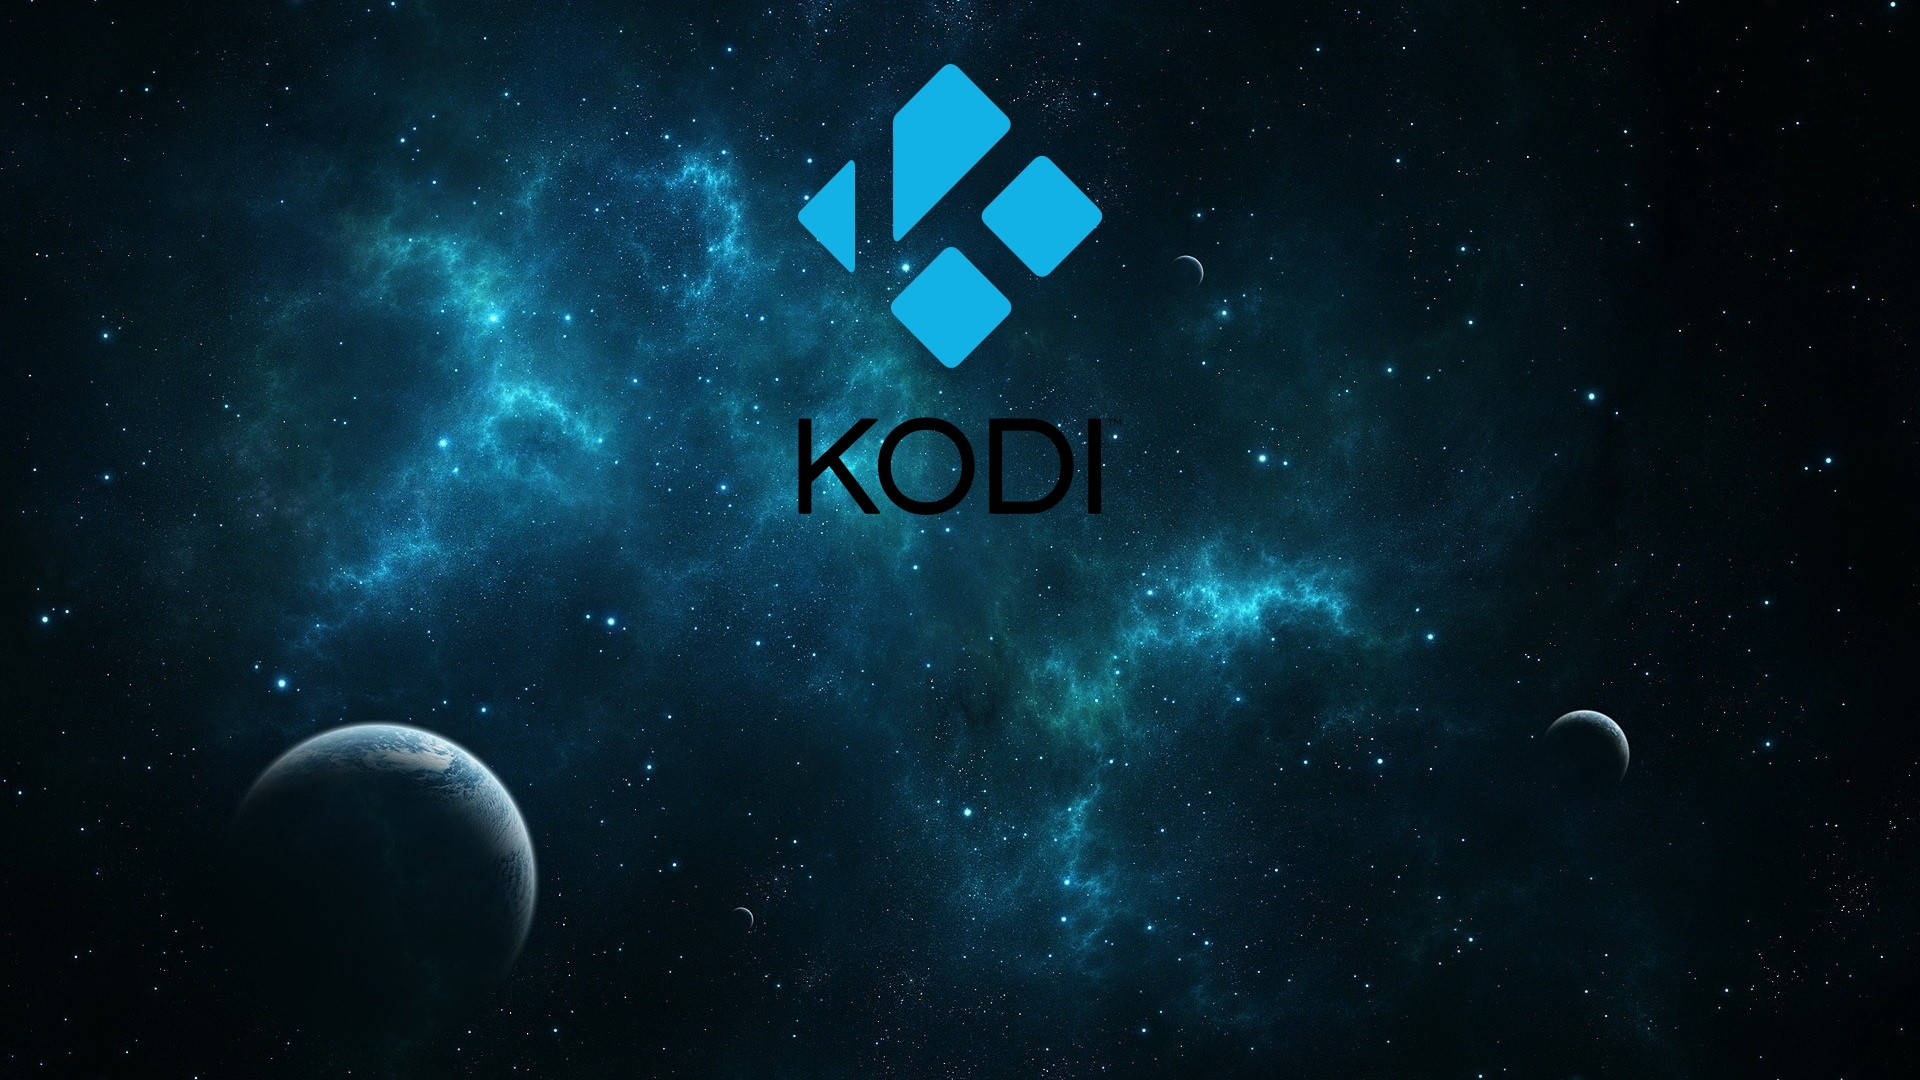 Blue Galaxy Themed Kodi Background